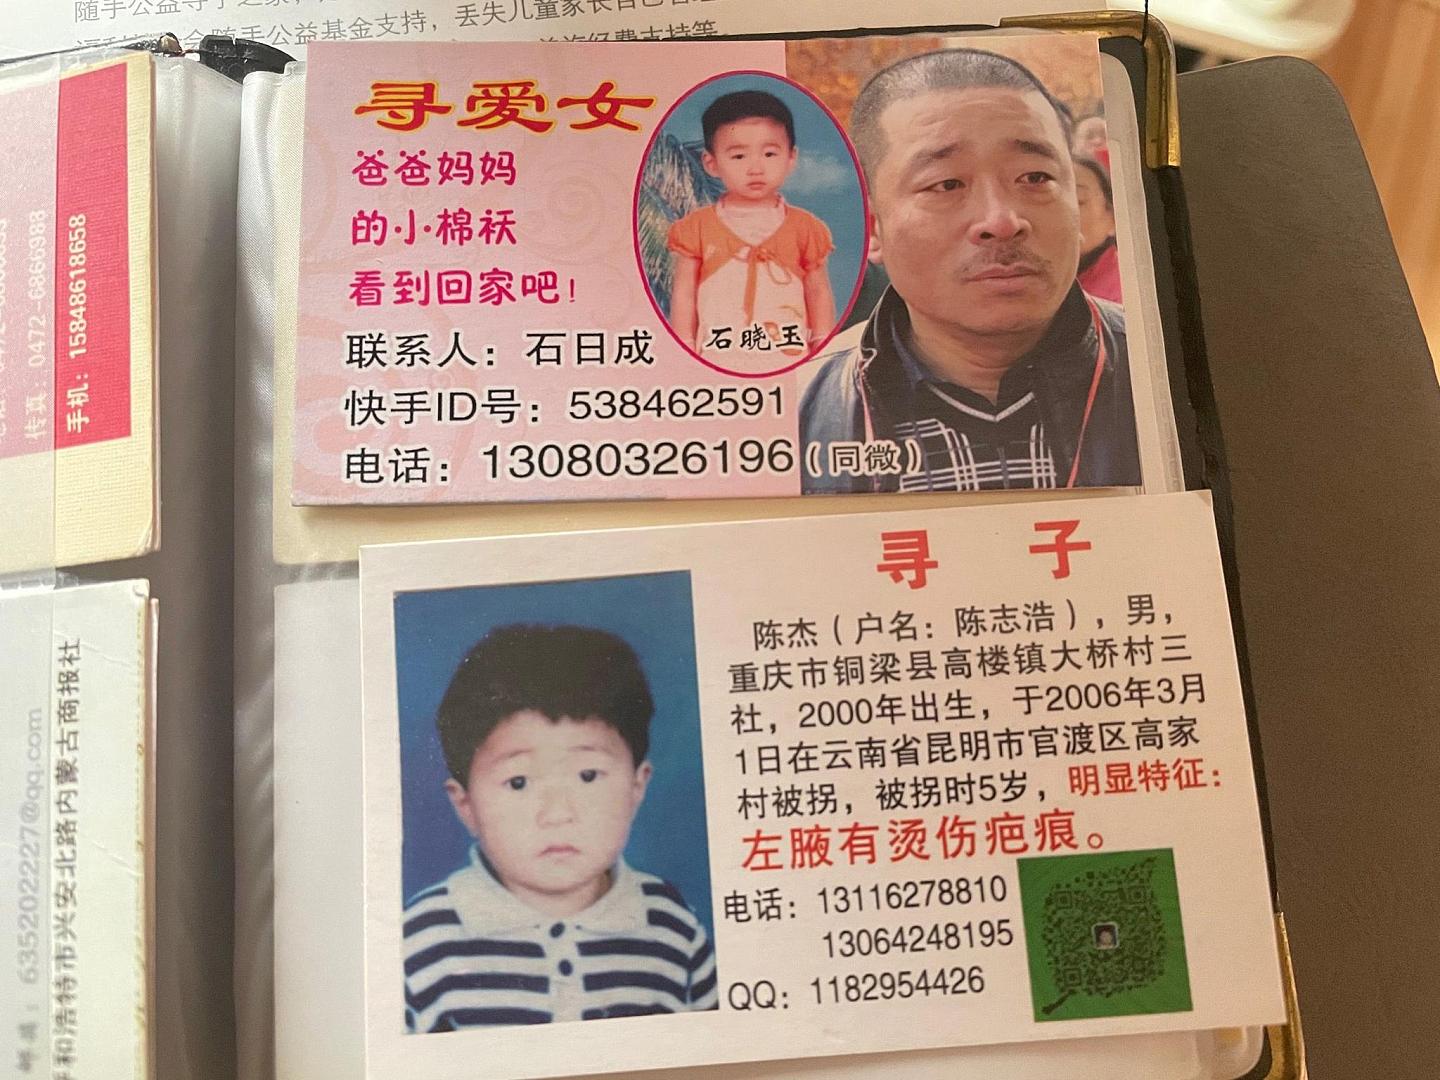 刘利勤还在帮其他家庭寻找孩子。新京报记者 周思雅 摄